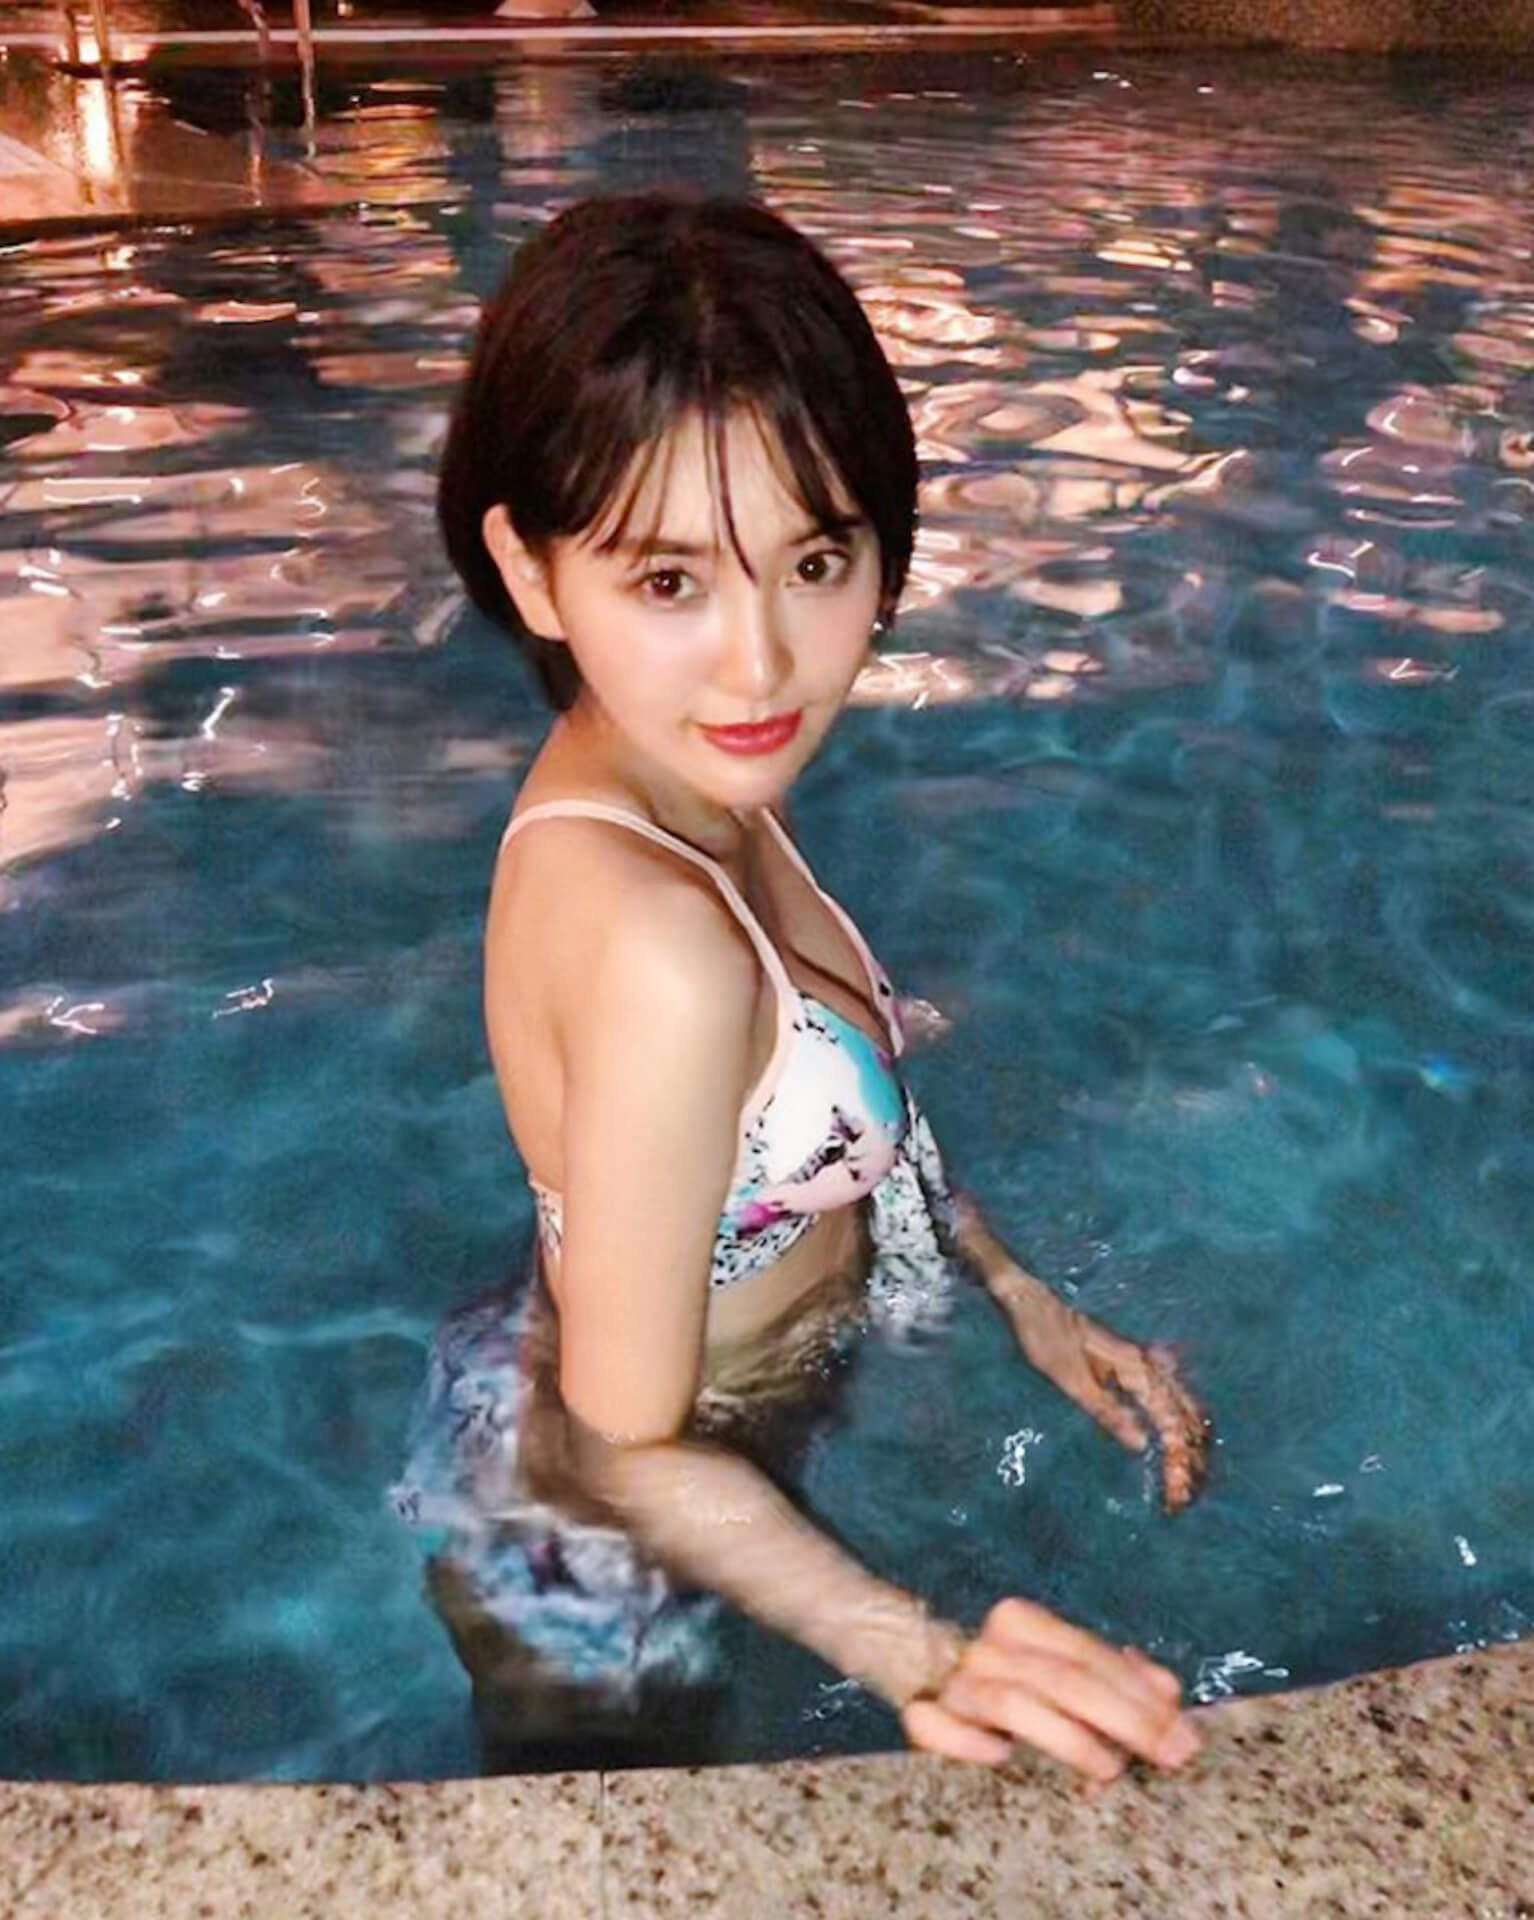 元HKT48の兒玉遥、夏の終わりを告げるセクシー水着姿を披露 art190927_kodamaharuka_2